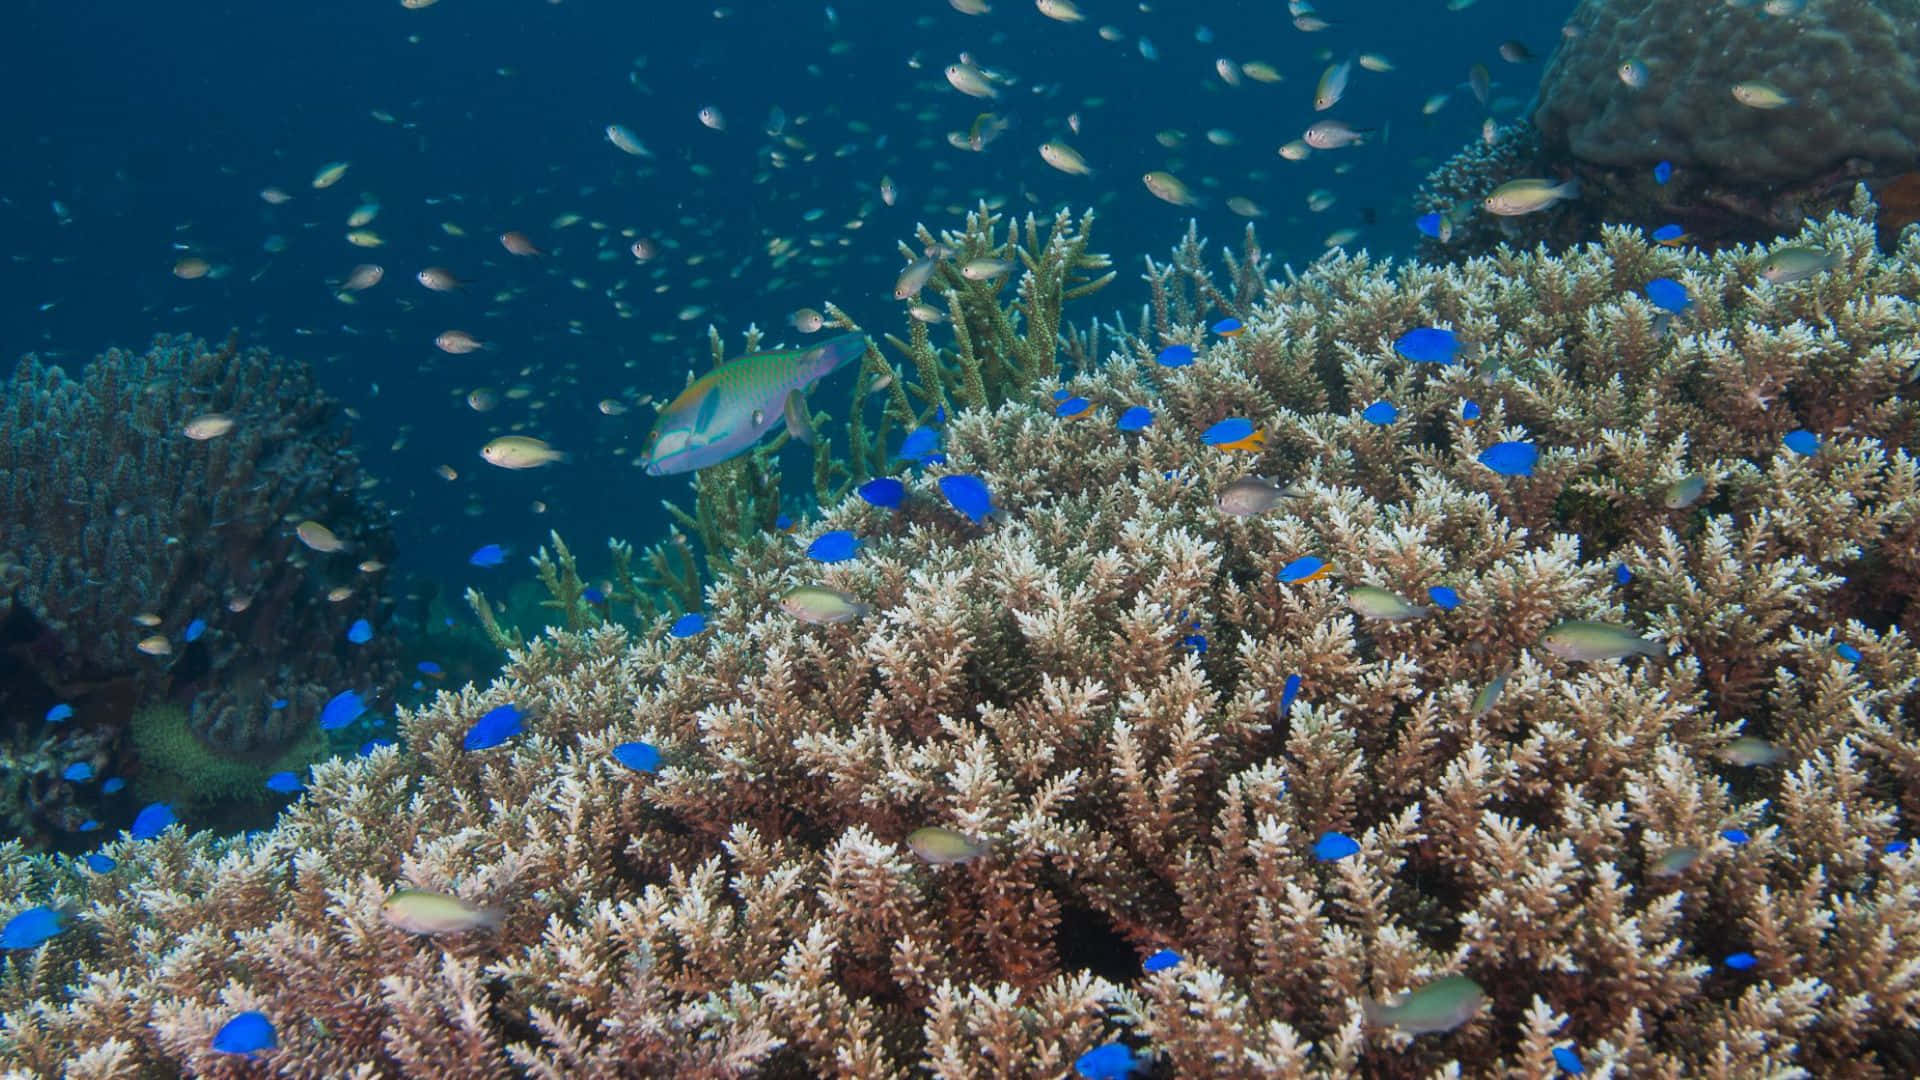 Underwater Coral Reefwith Damselfish.jpg Wallpaper